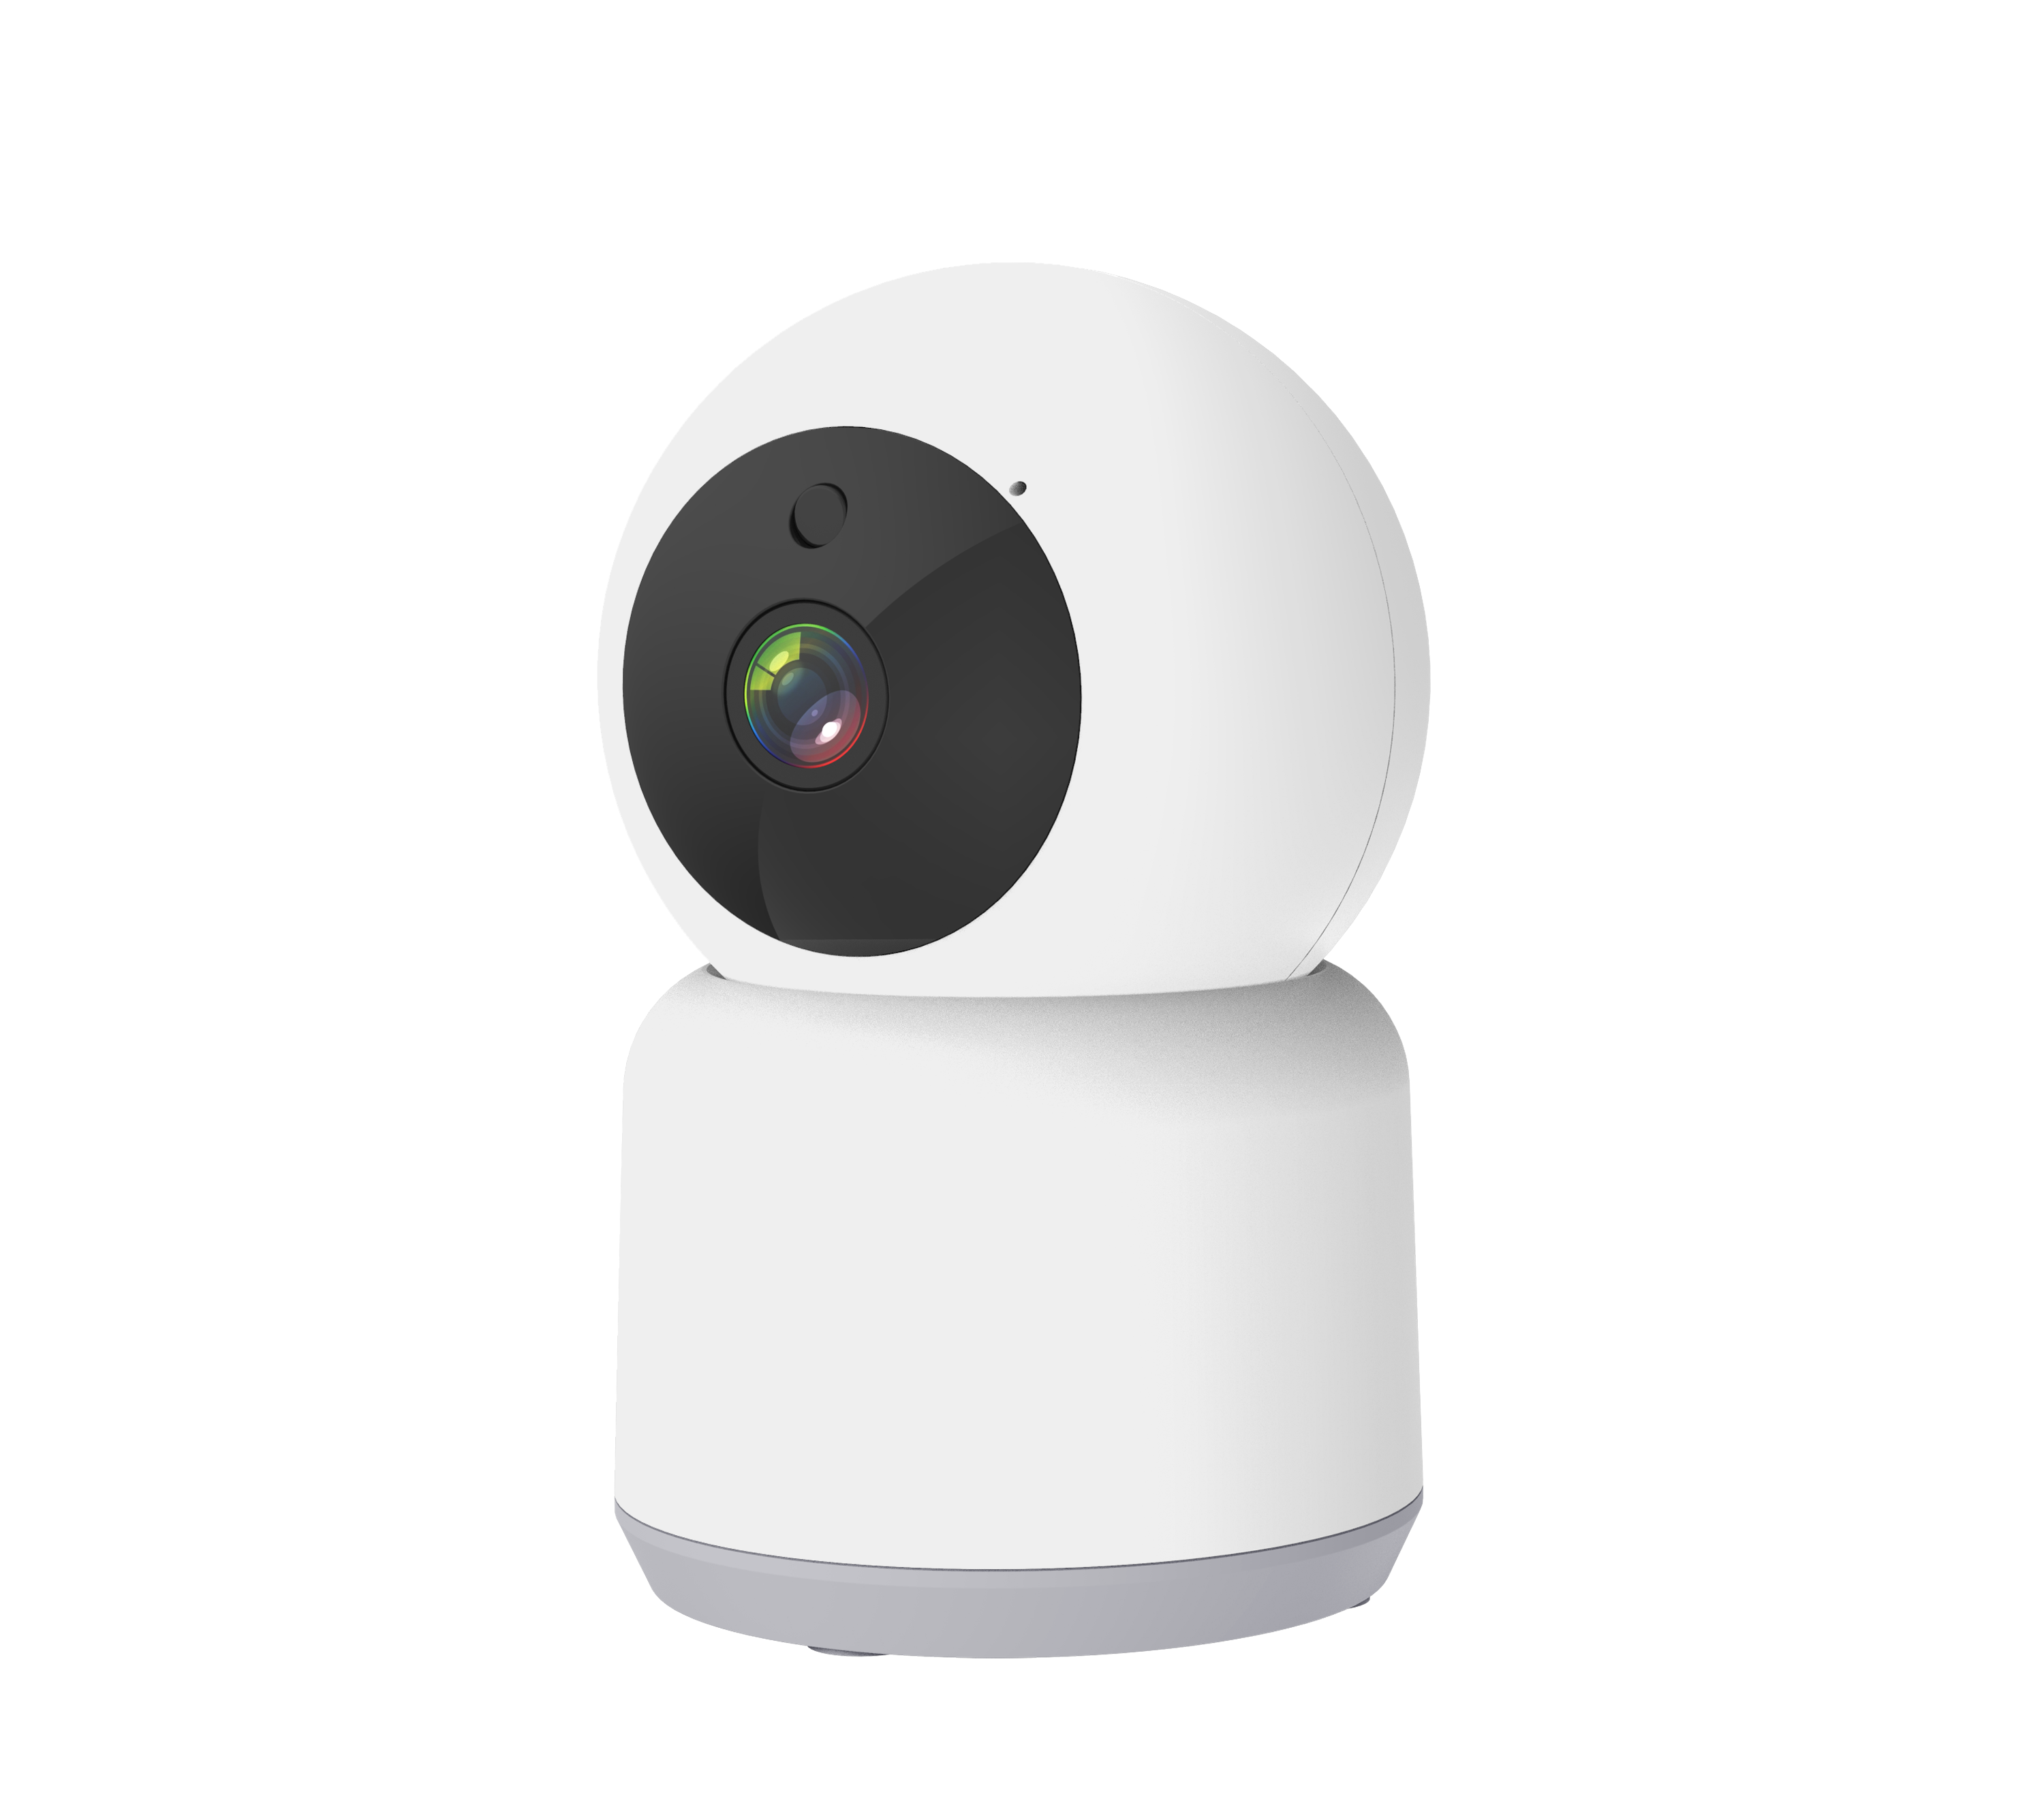 Caméra de surveillance sans fil CCTV WiFi Sécurité sans fil